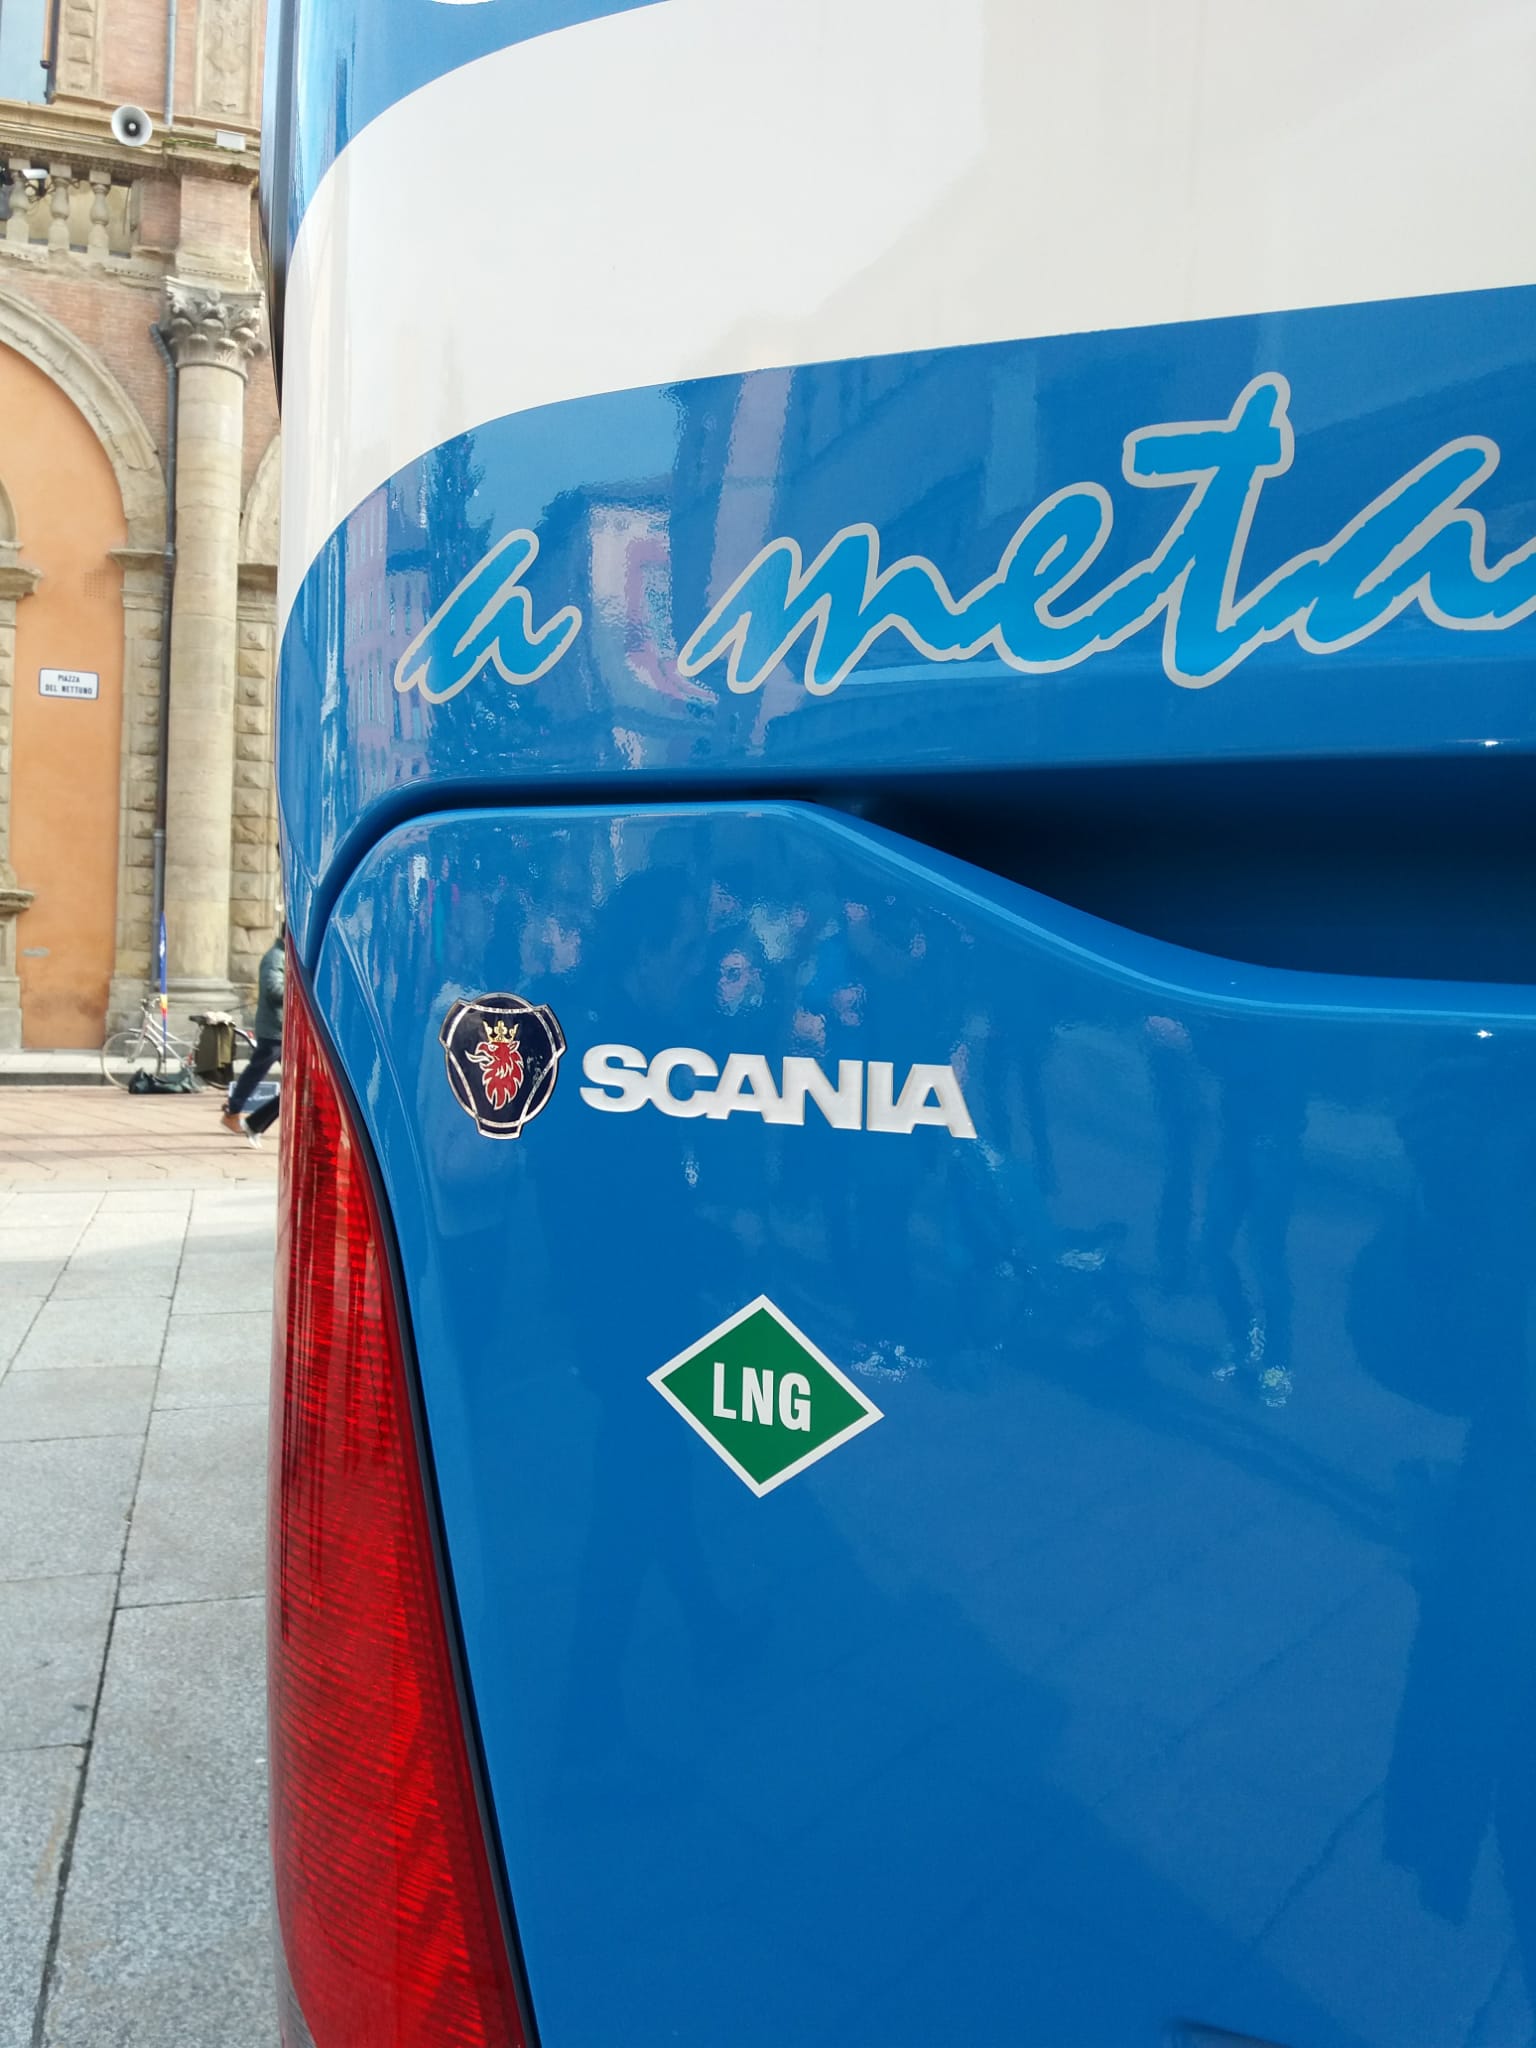 Bologna: in consegna i 15 bus Scania GNL interurbani (con novità)